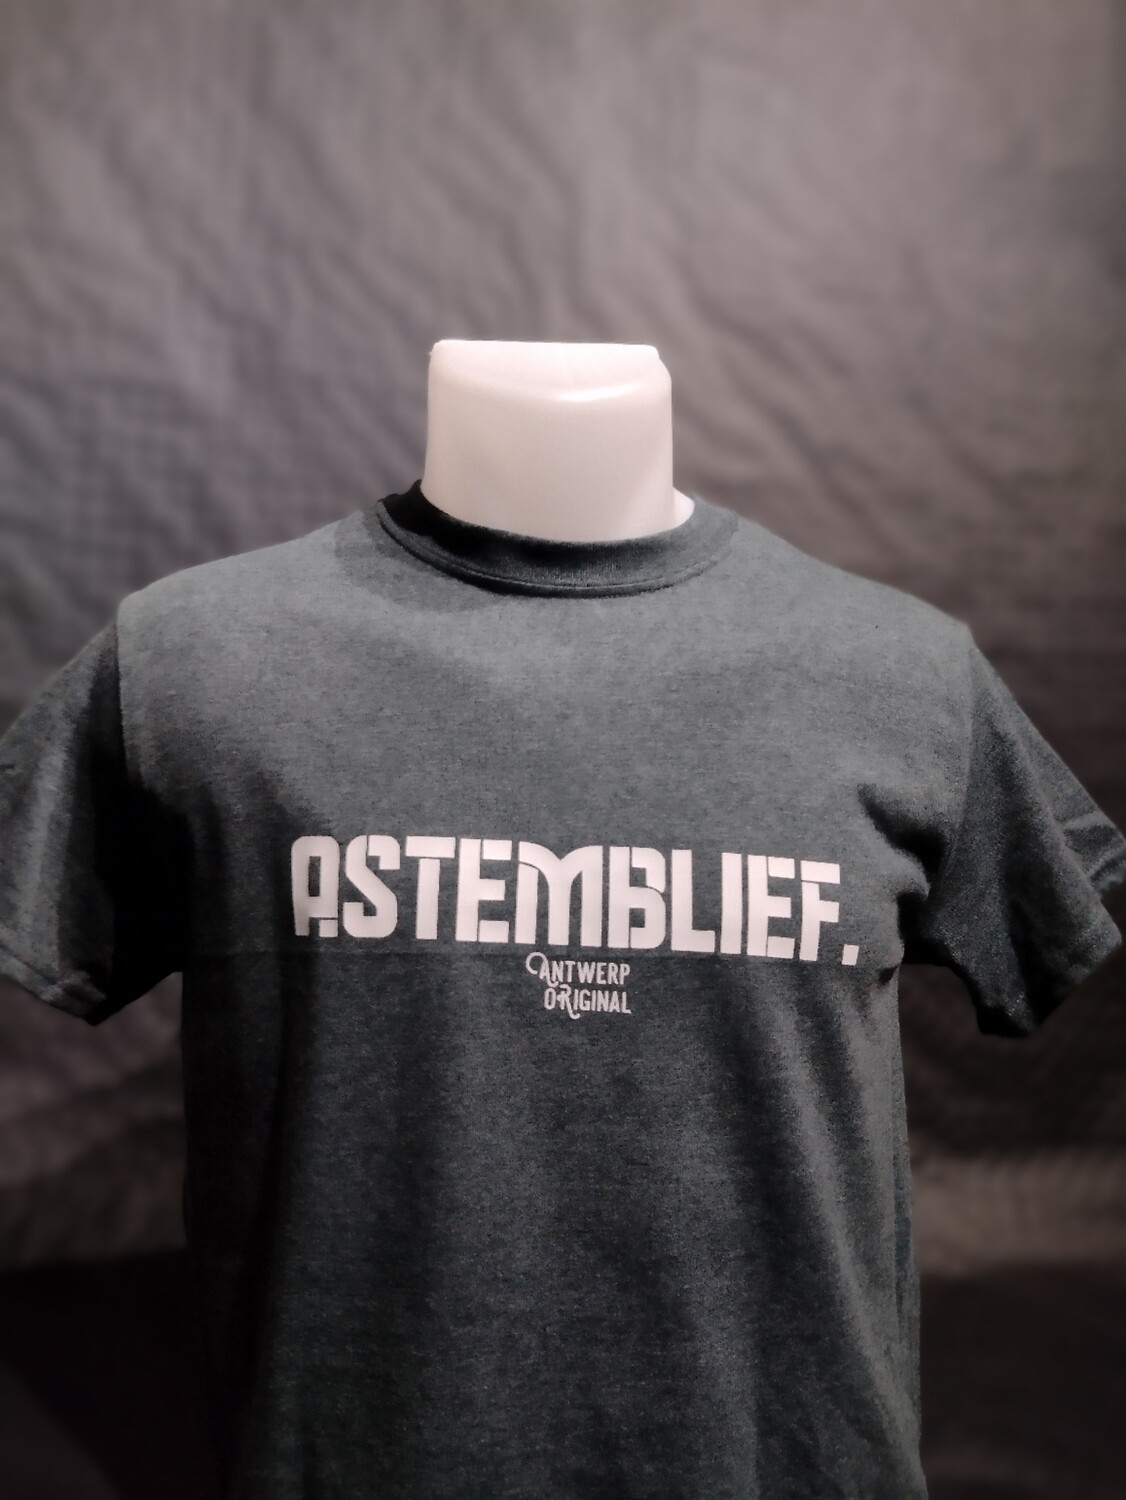 T shirt - Astemblief.